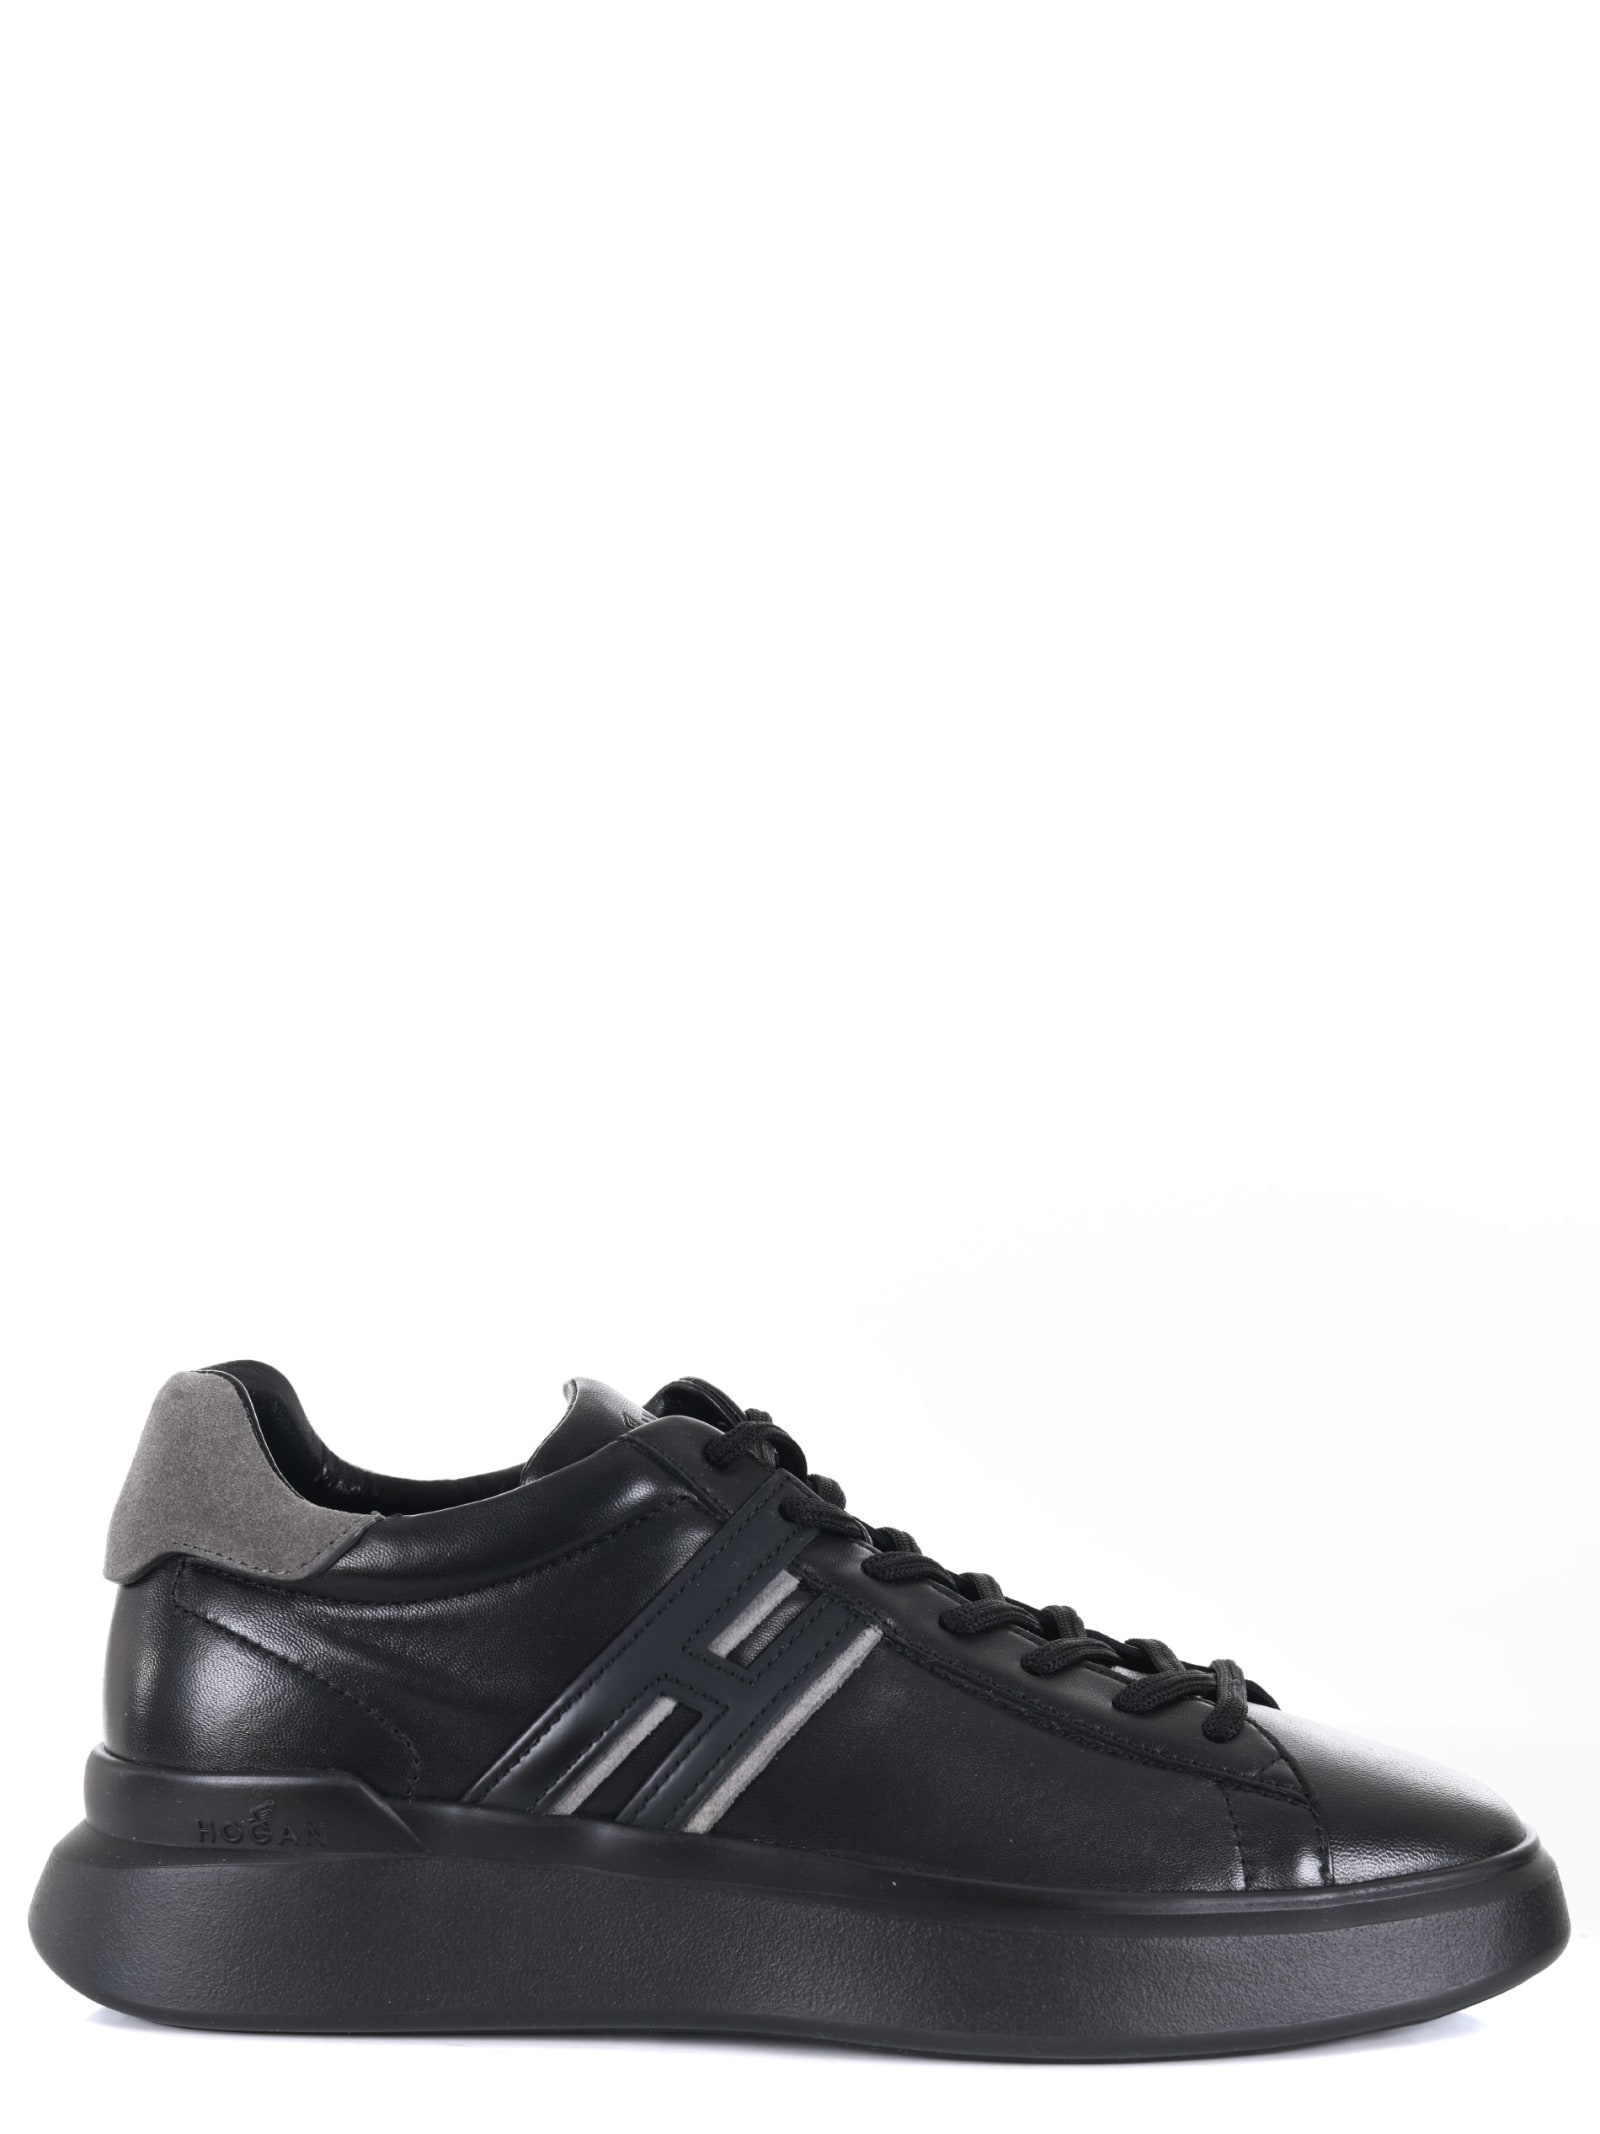 Hogan Sneakers In Black